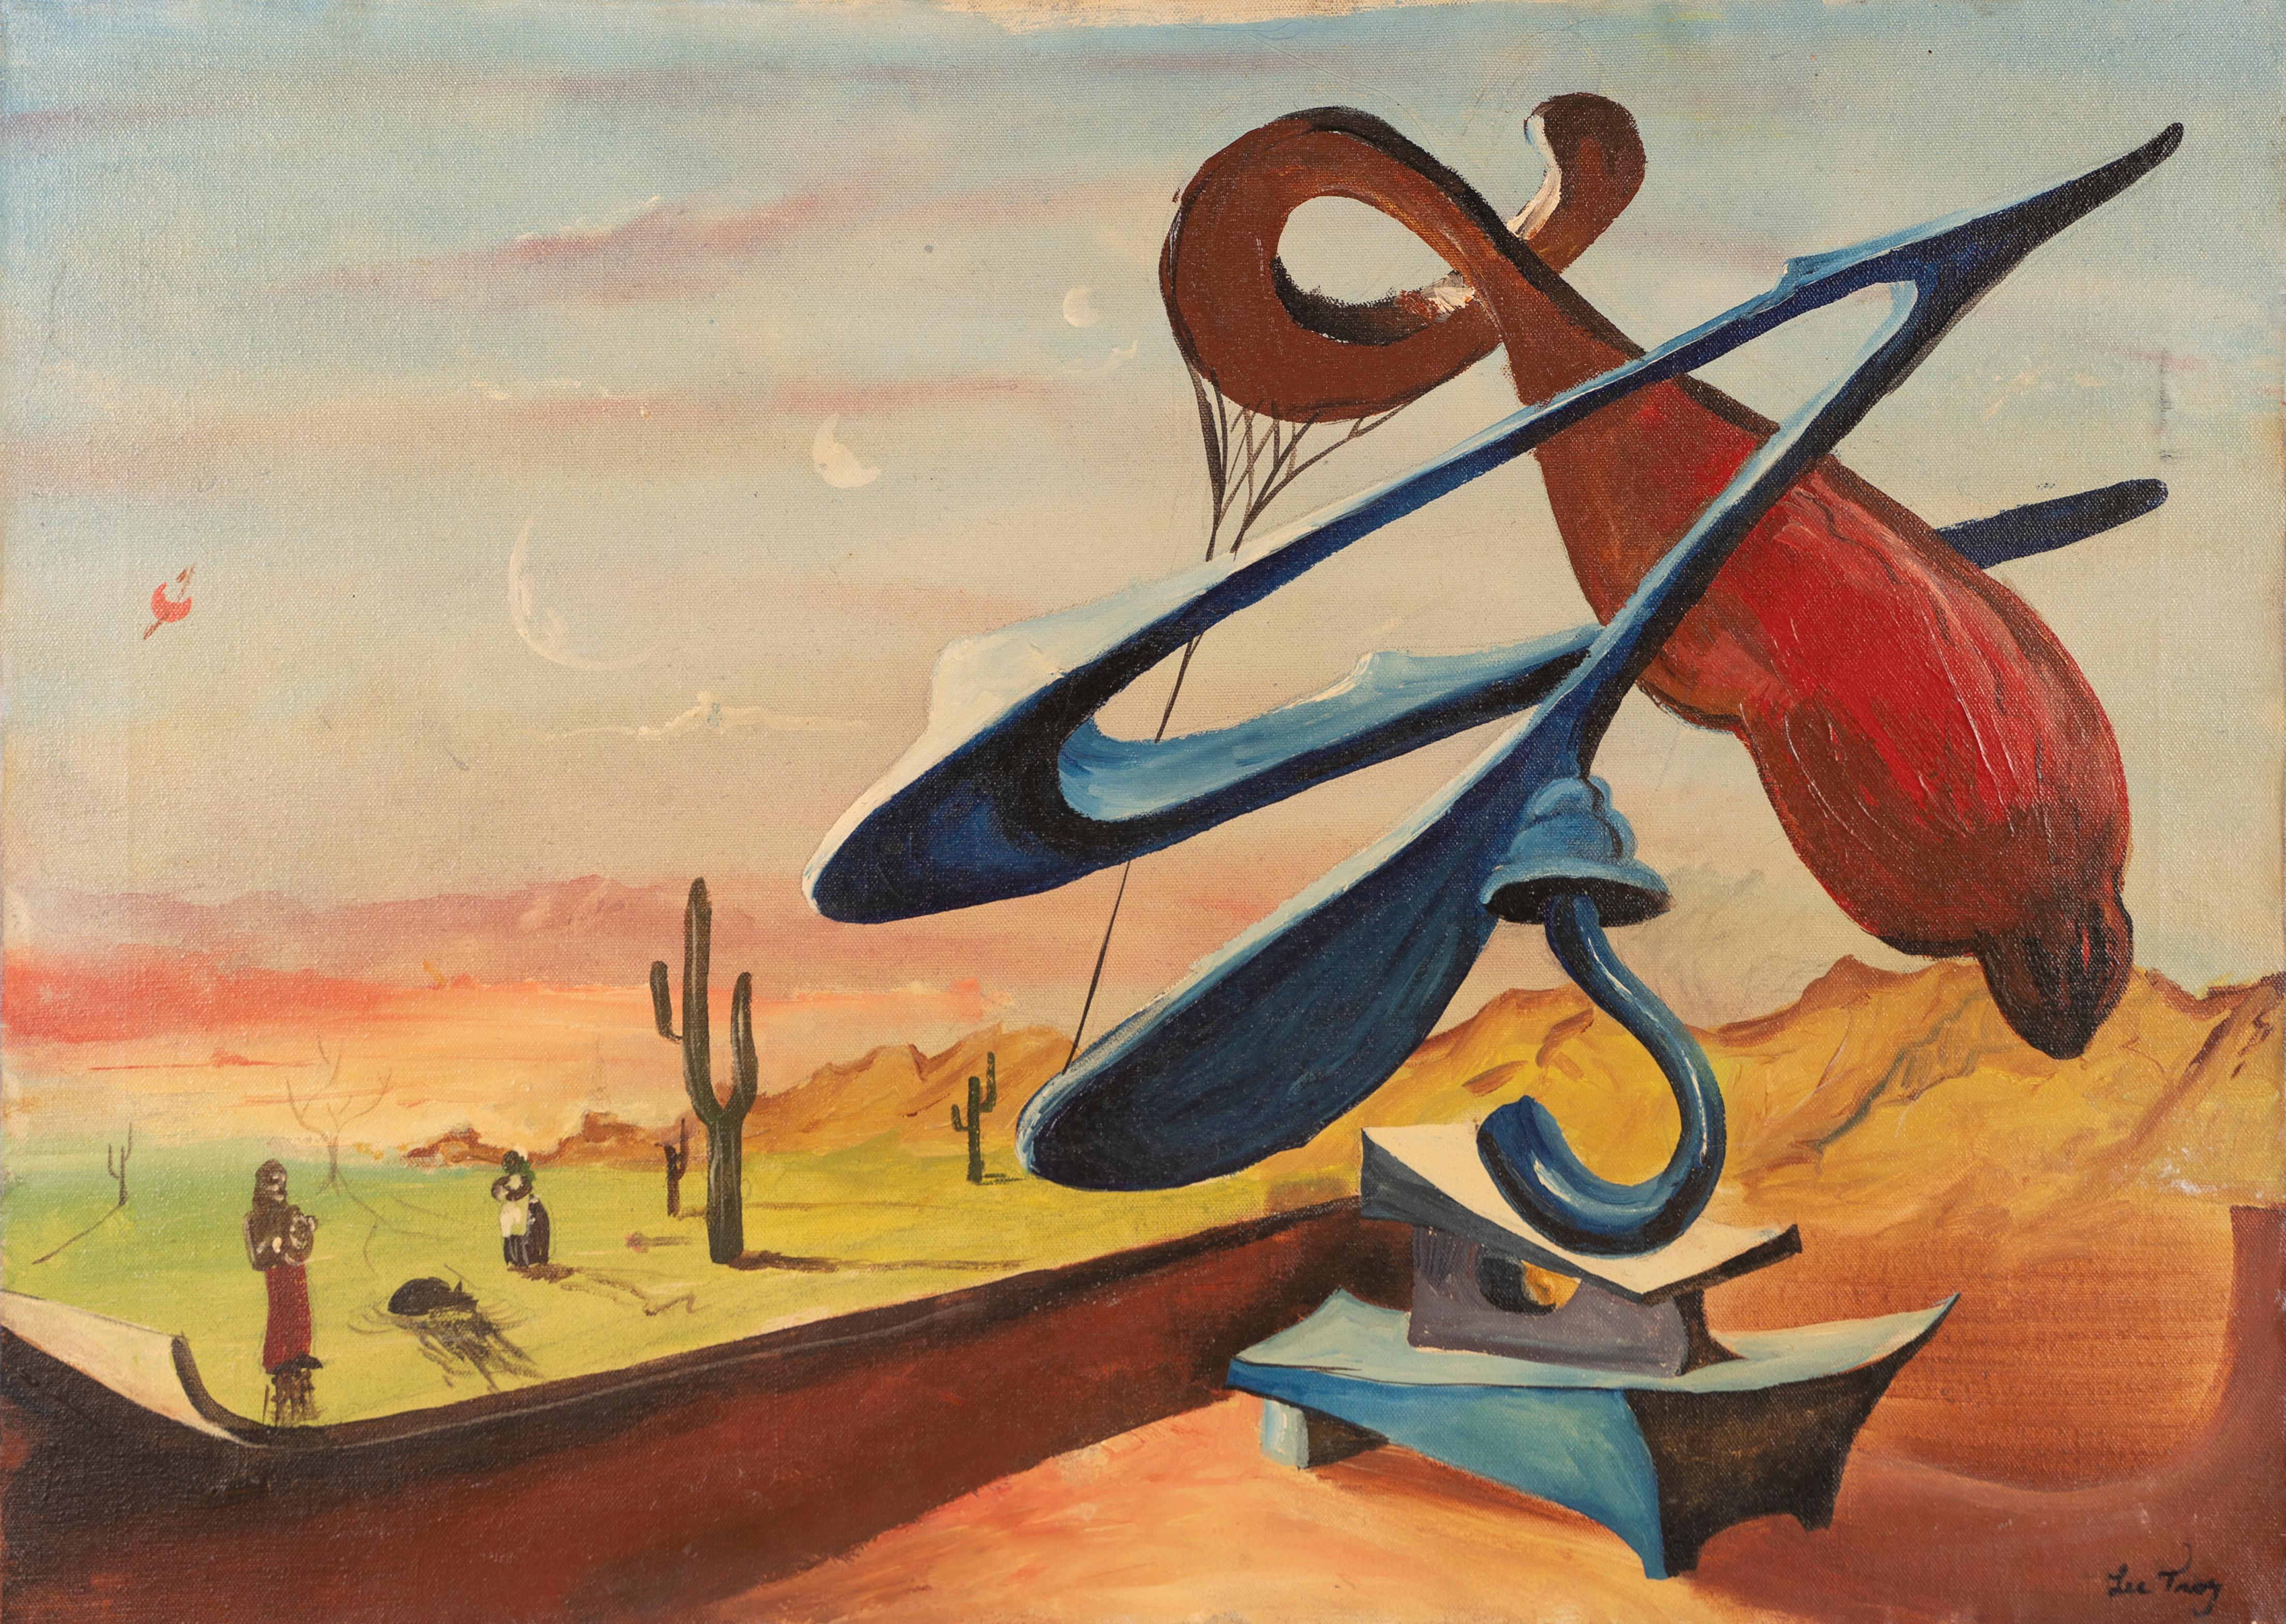 Signed Surreal Southwest Modernist Desert Cactus Original Vintage Oil Painting